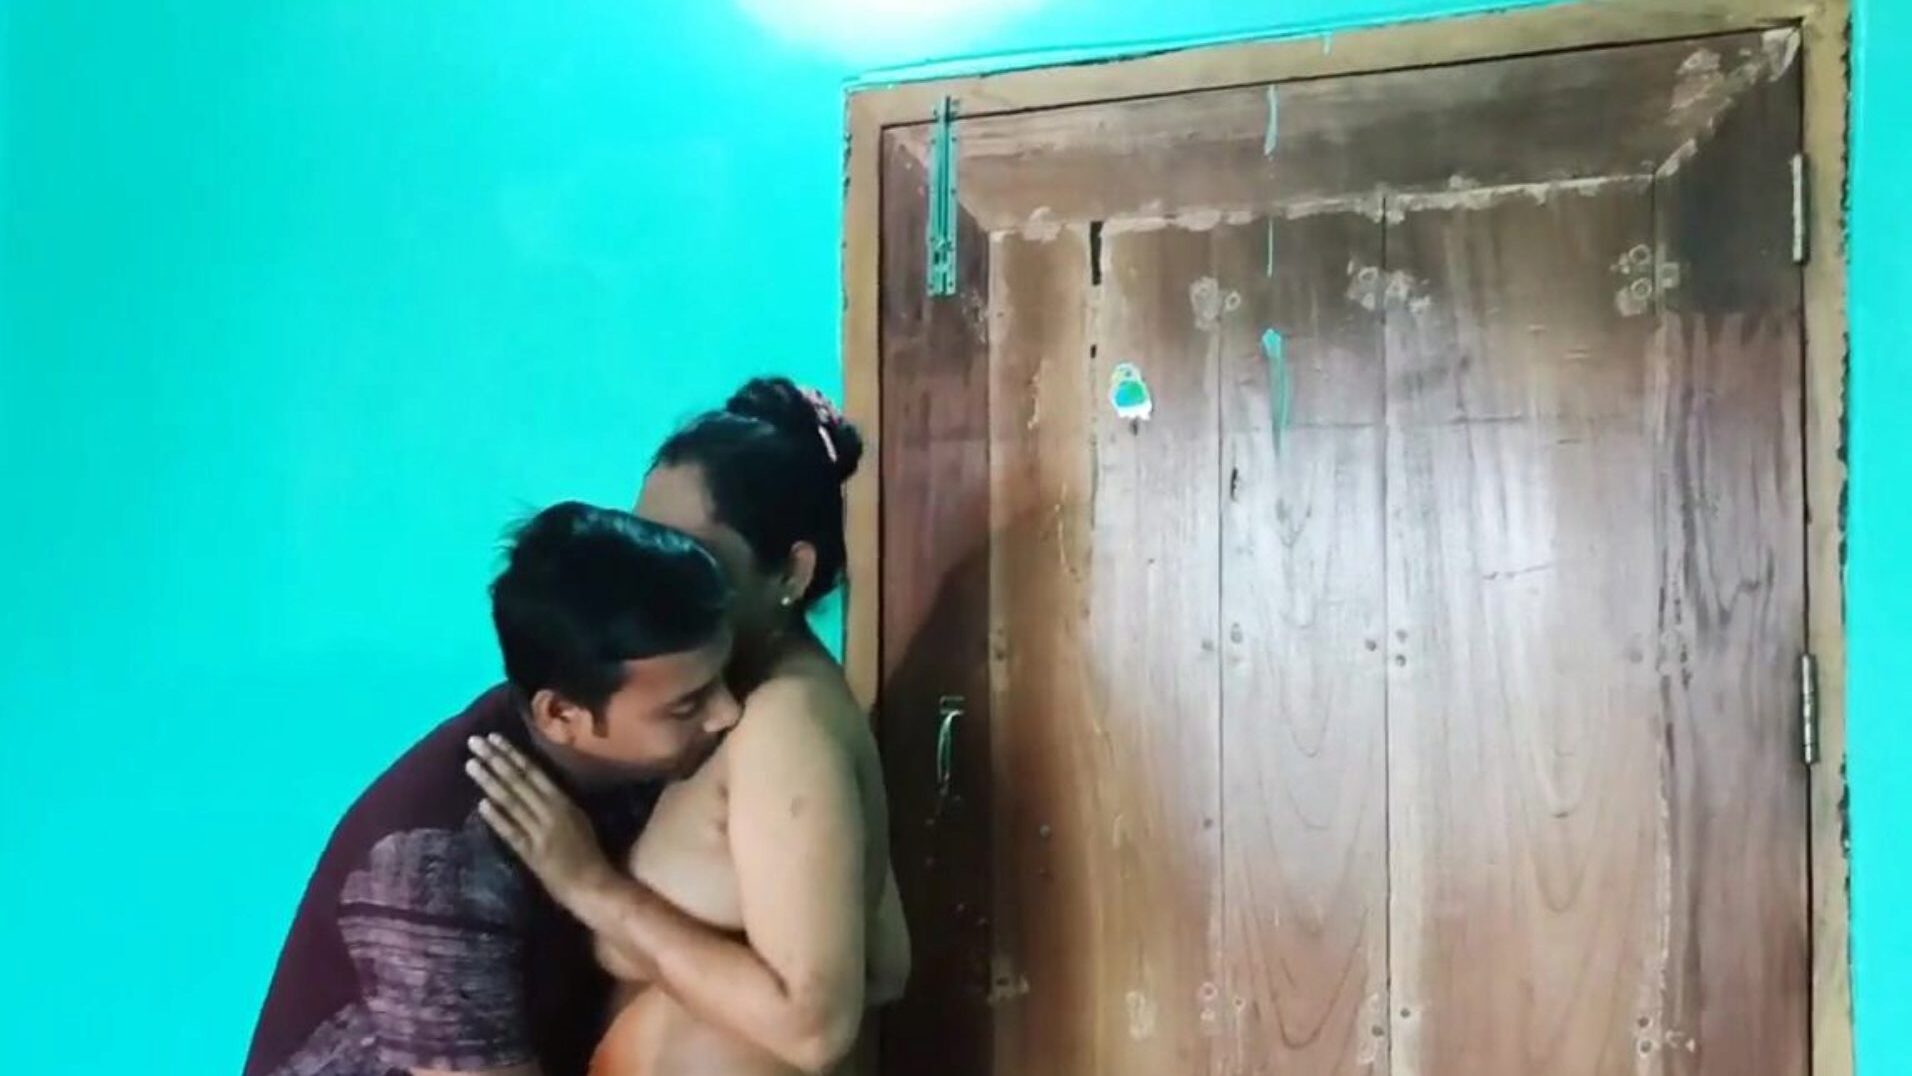 desi bengali sex video naked, free asian porn 6c: xhamster mira desi bengali sex video naked movie en xhamster, la página web de tubo de conexión en alta definición más gruesa con toneladas de sexo xxn asiático gratis y películas de porno anal